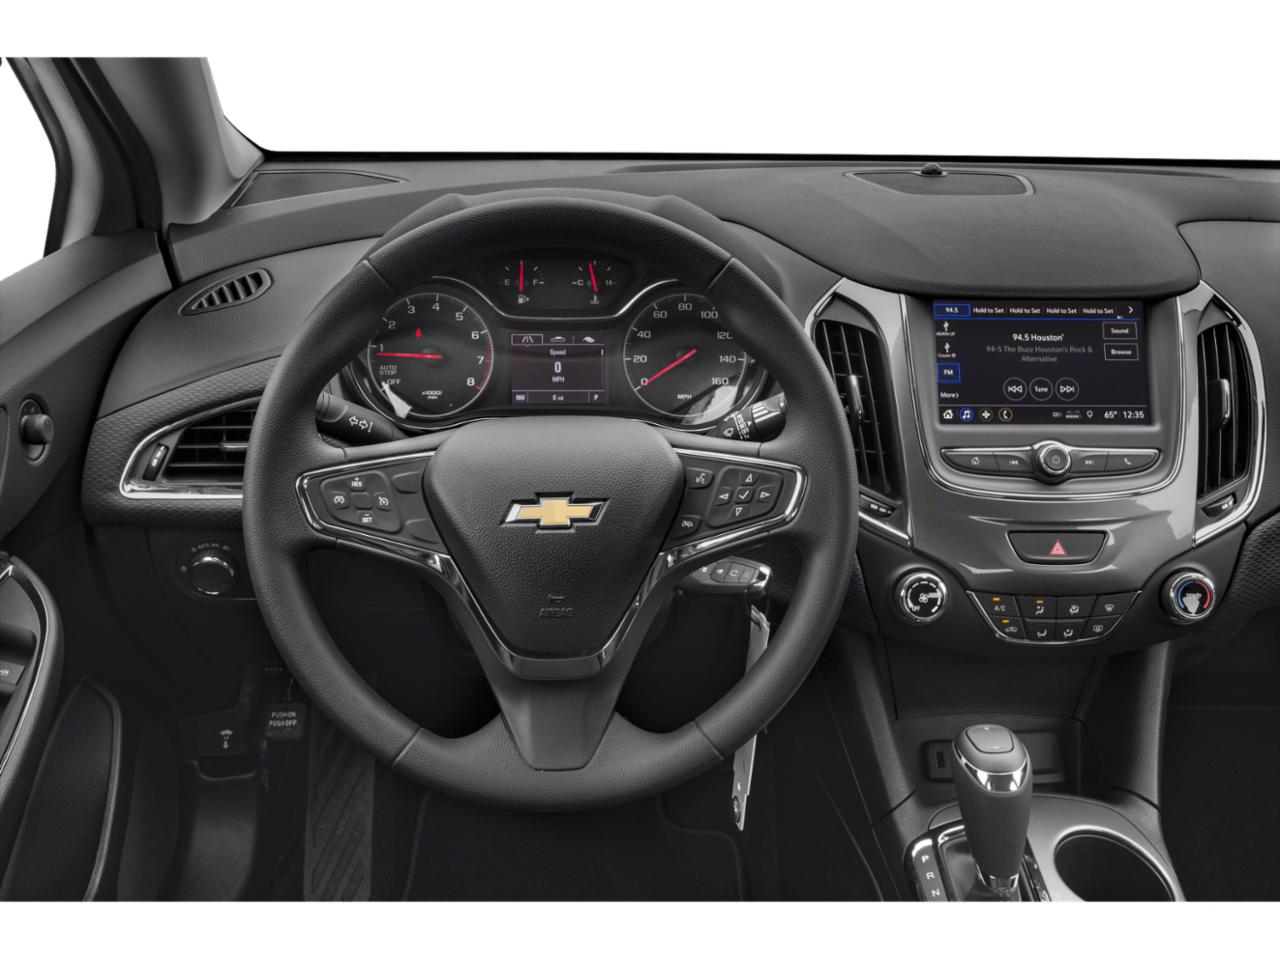 Chevrolet Cruze 2019 салон